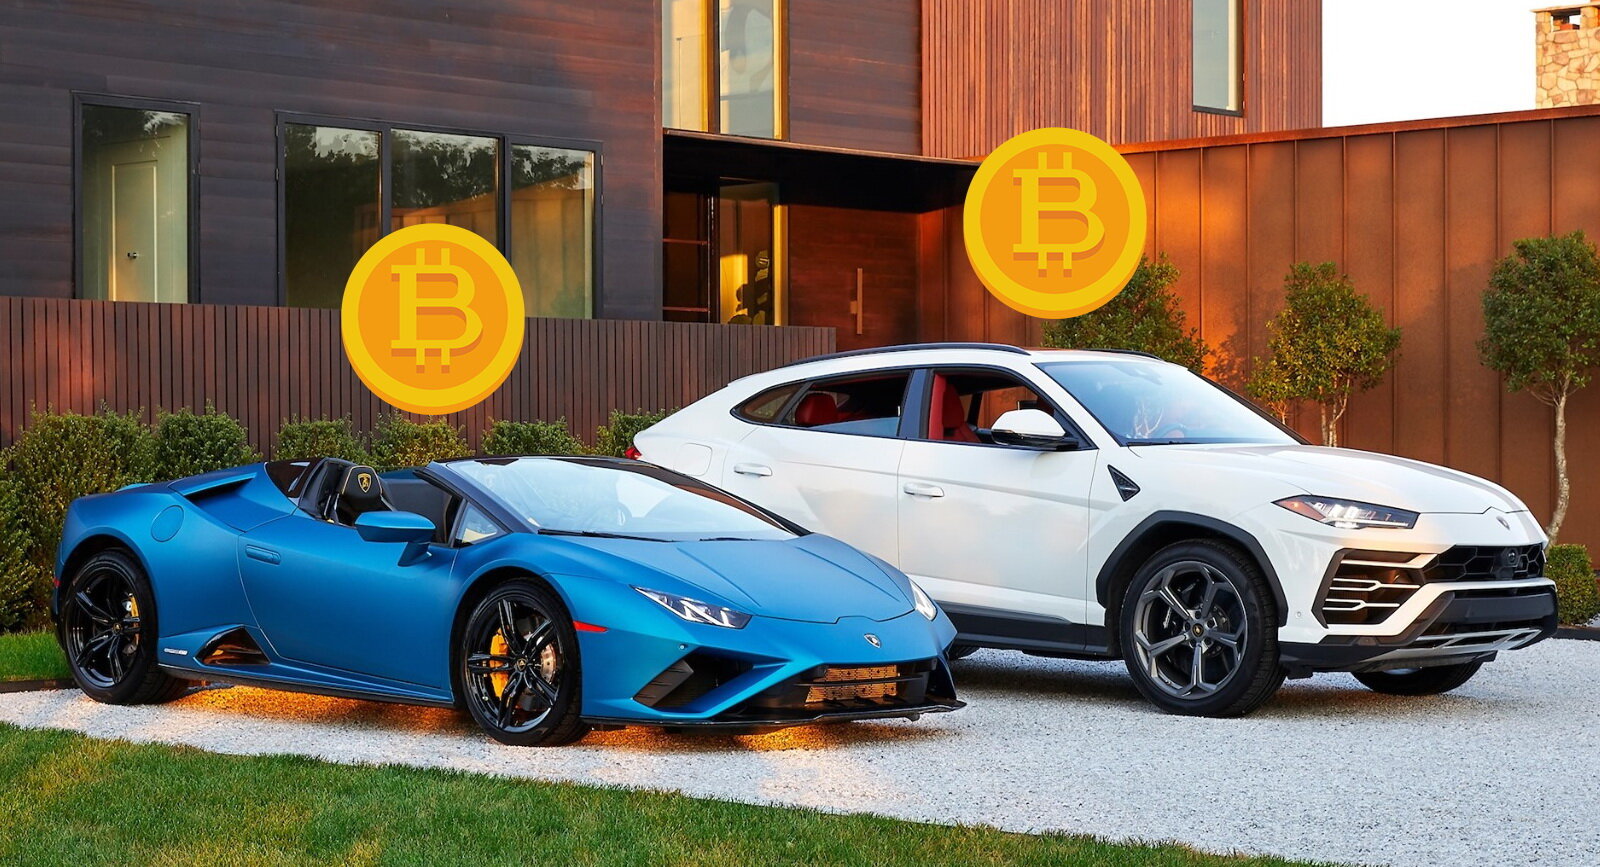 Can I buy a Lamborghini with crypto?